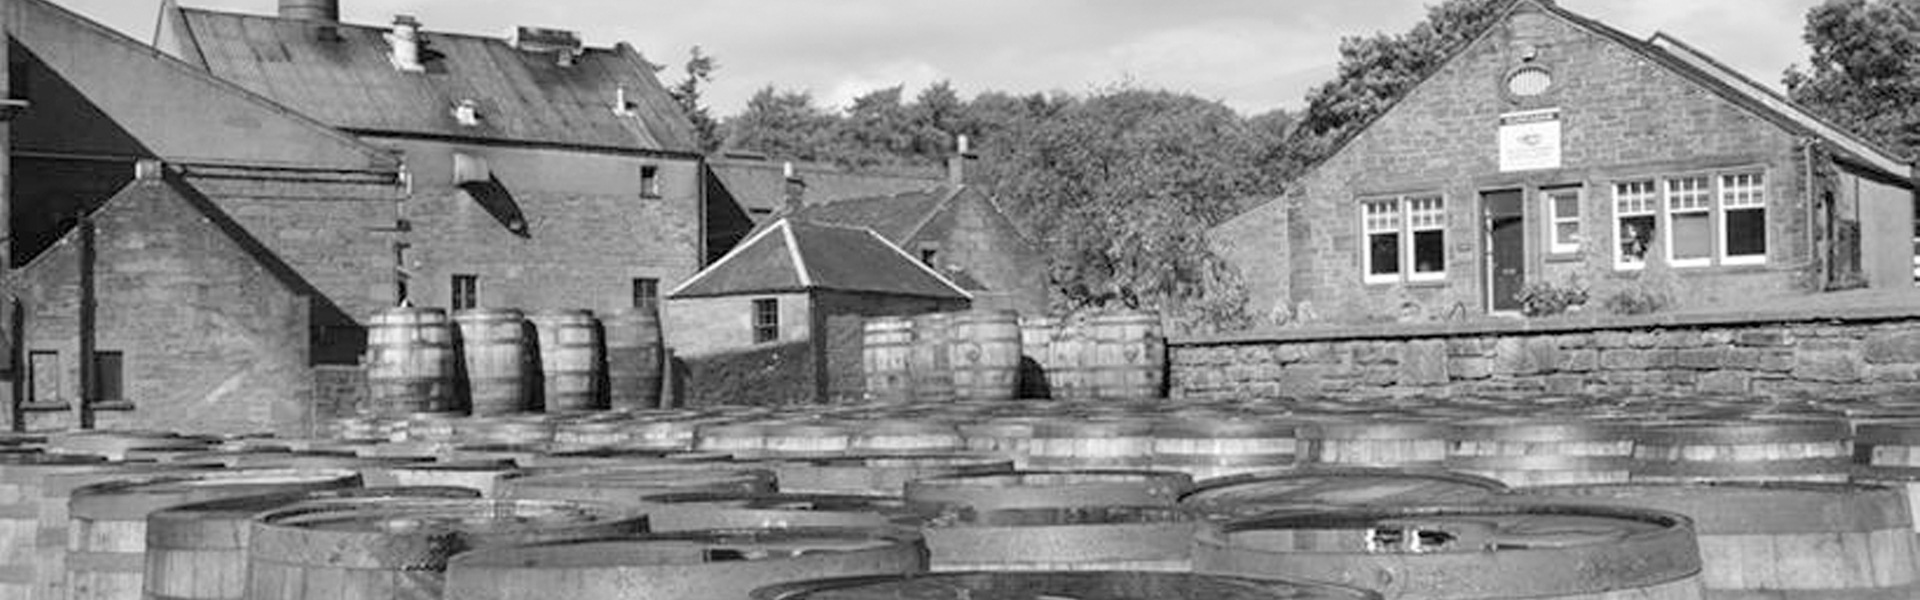 Glencadam Distillery